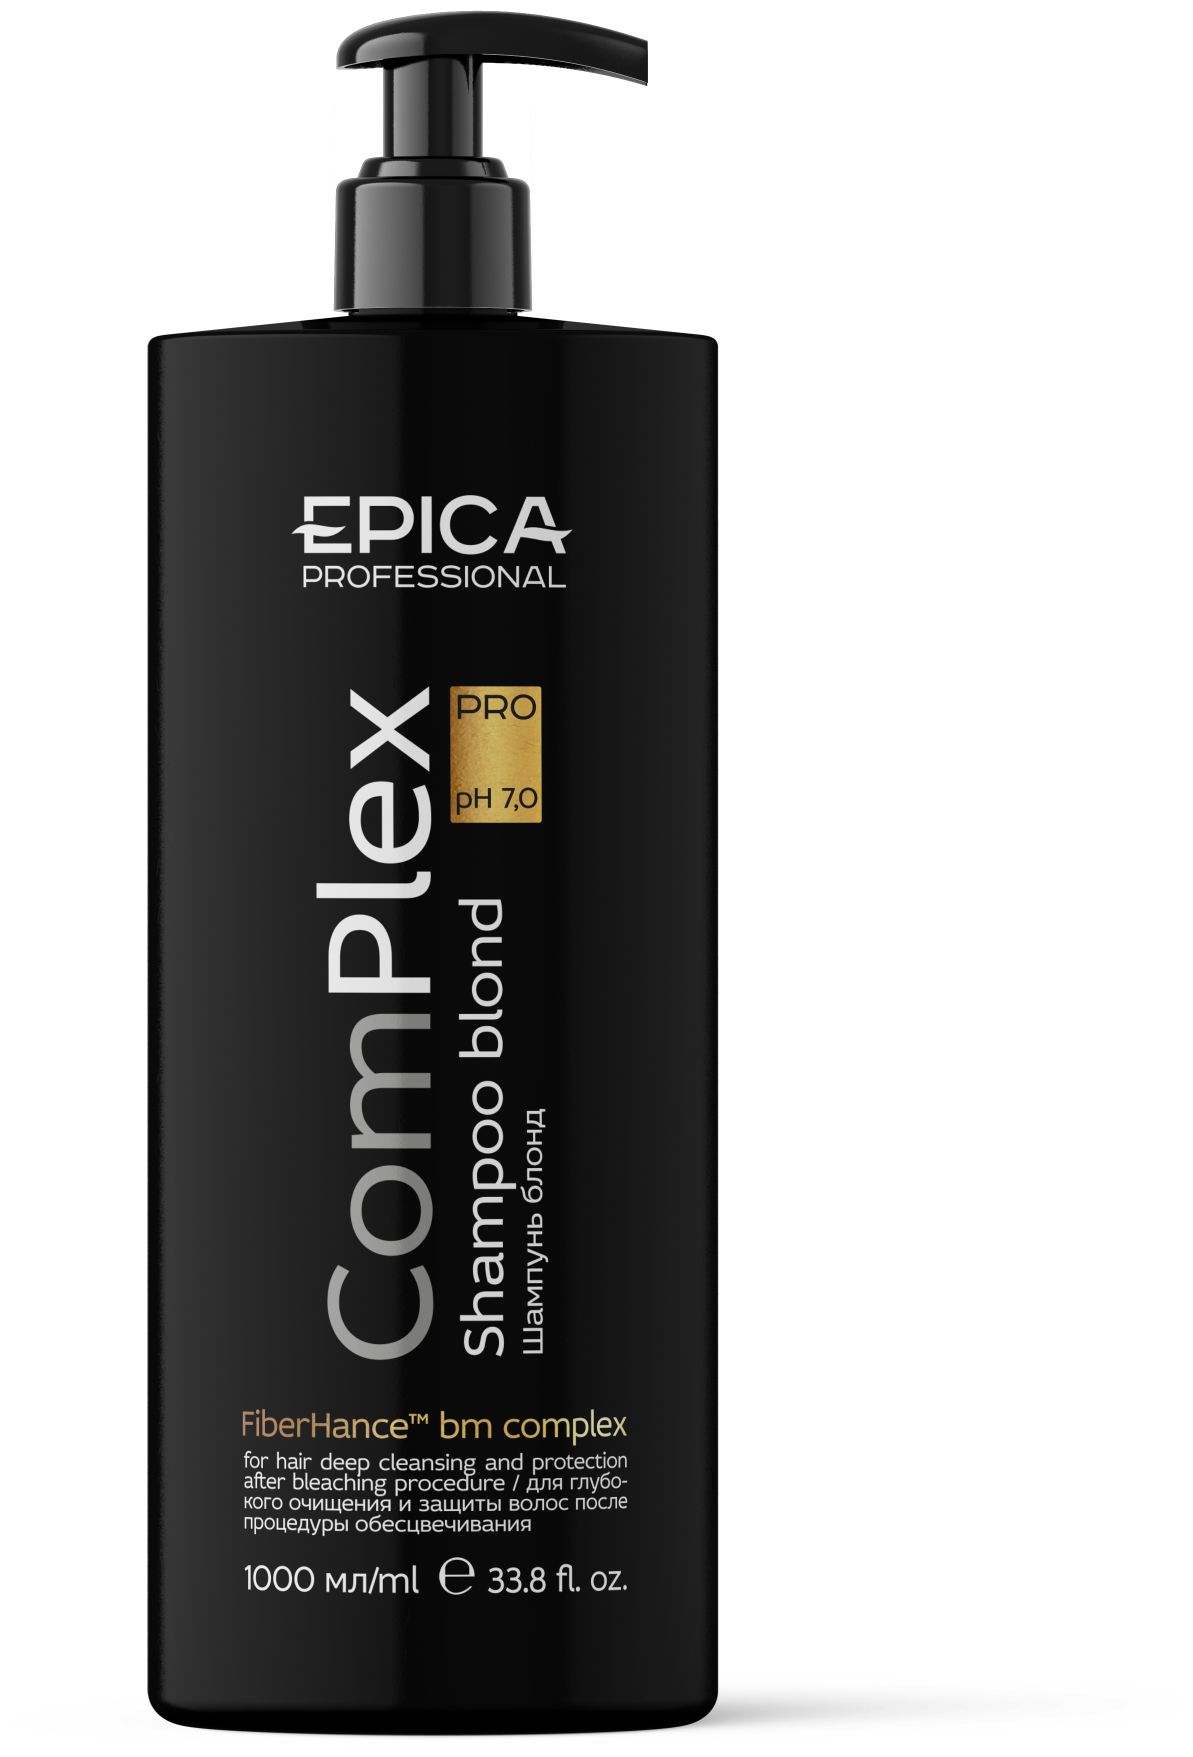 EPICA Professional шампунь ComPlex PRO для глубокого очищения и защиты после процедуры обесцвечивания, 1000 мл